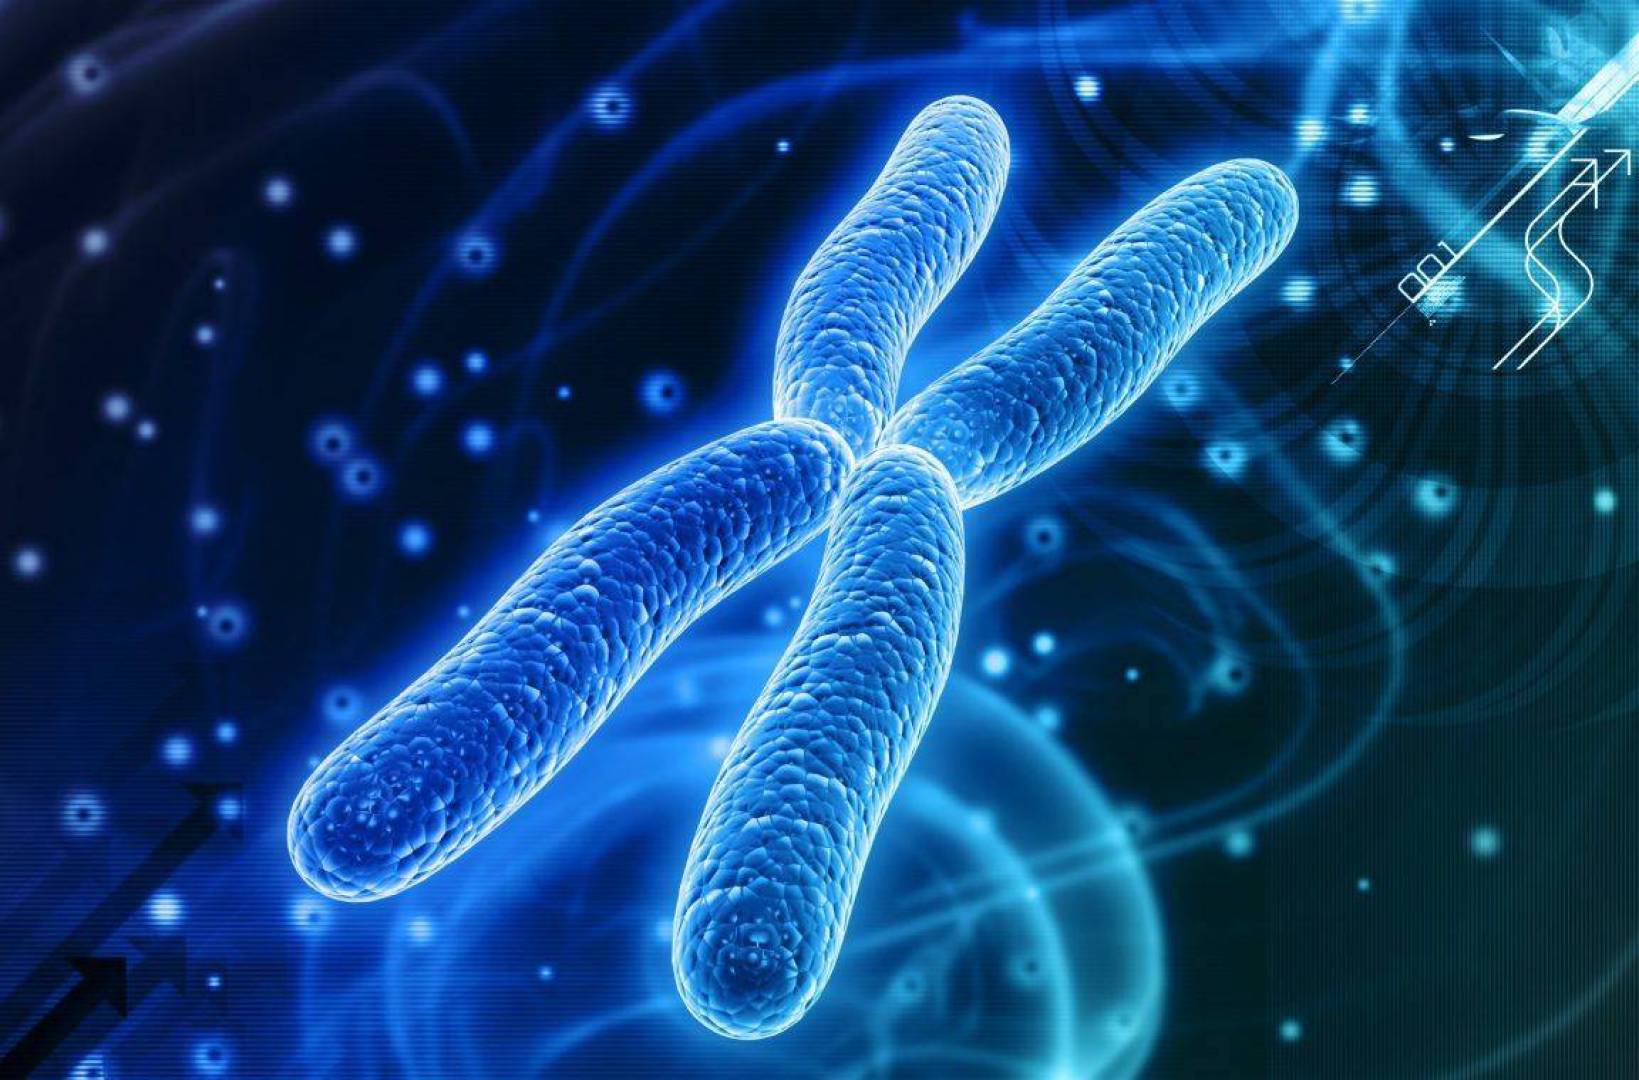 باحثون يكتشفون 50 جينا على الكروموسوم X مسؤول عن العقم لدى الرجال